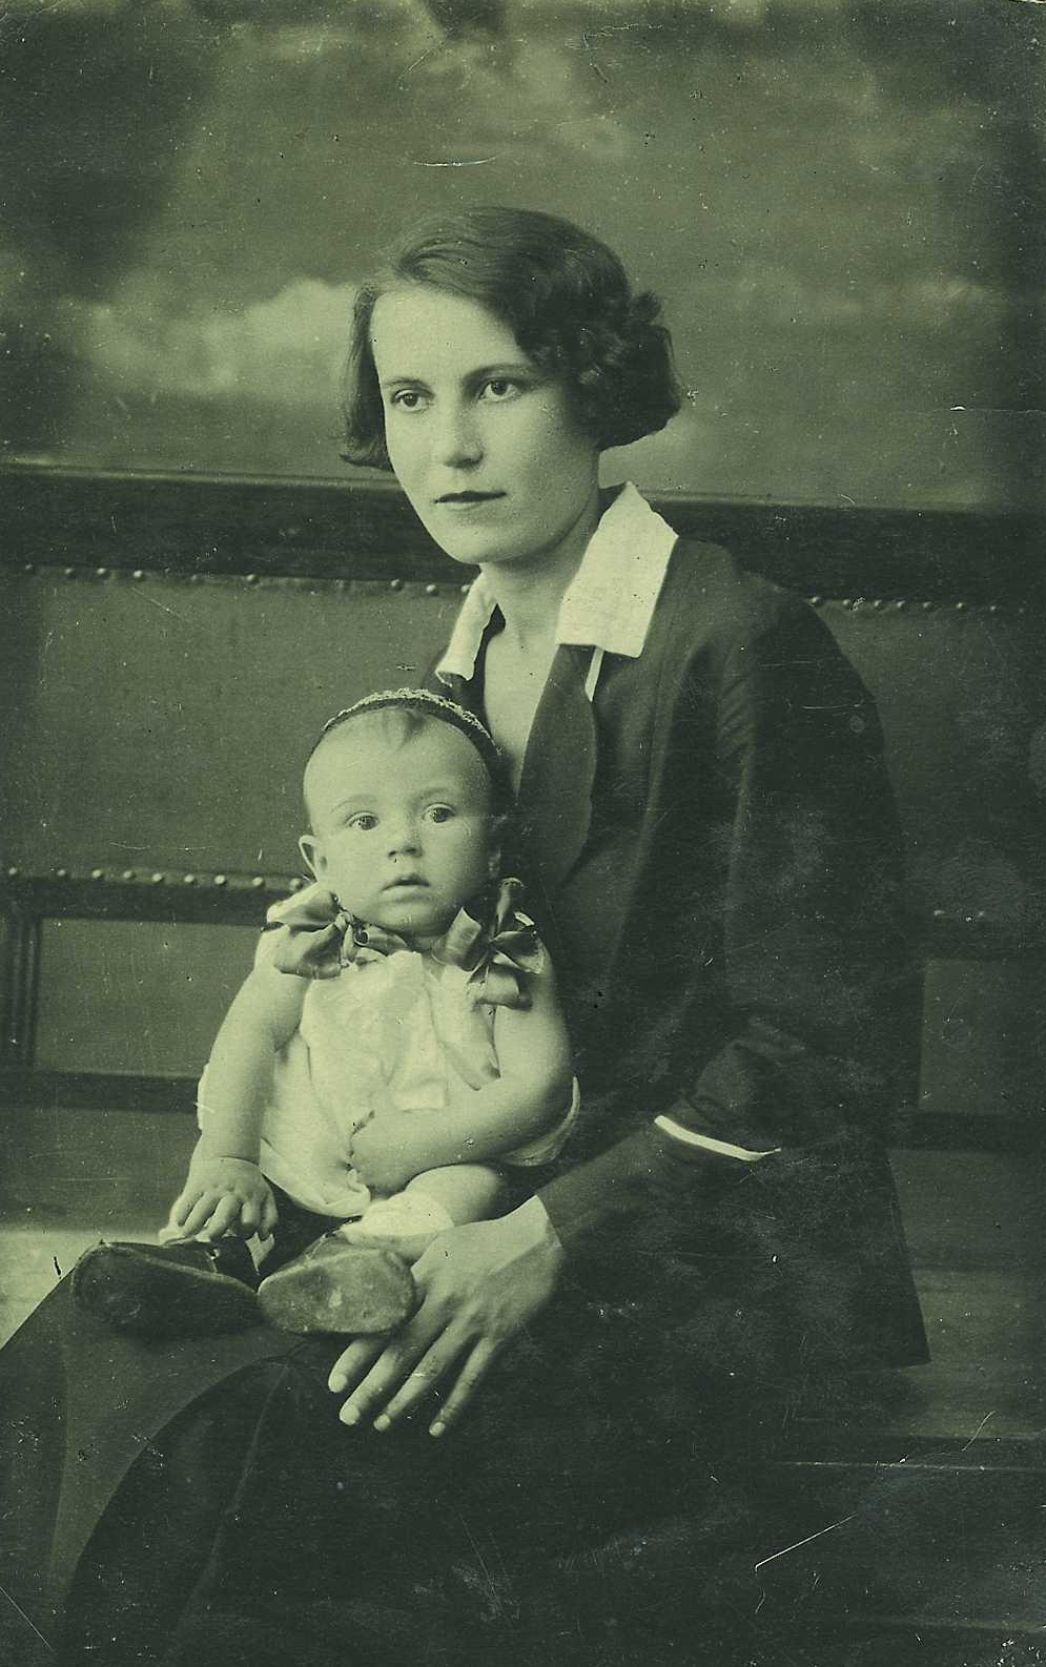 Portrait photo of Aleksandra Pavlovna Lavrik with a baby on her lap